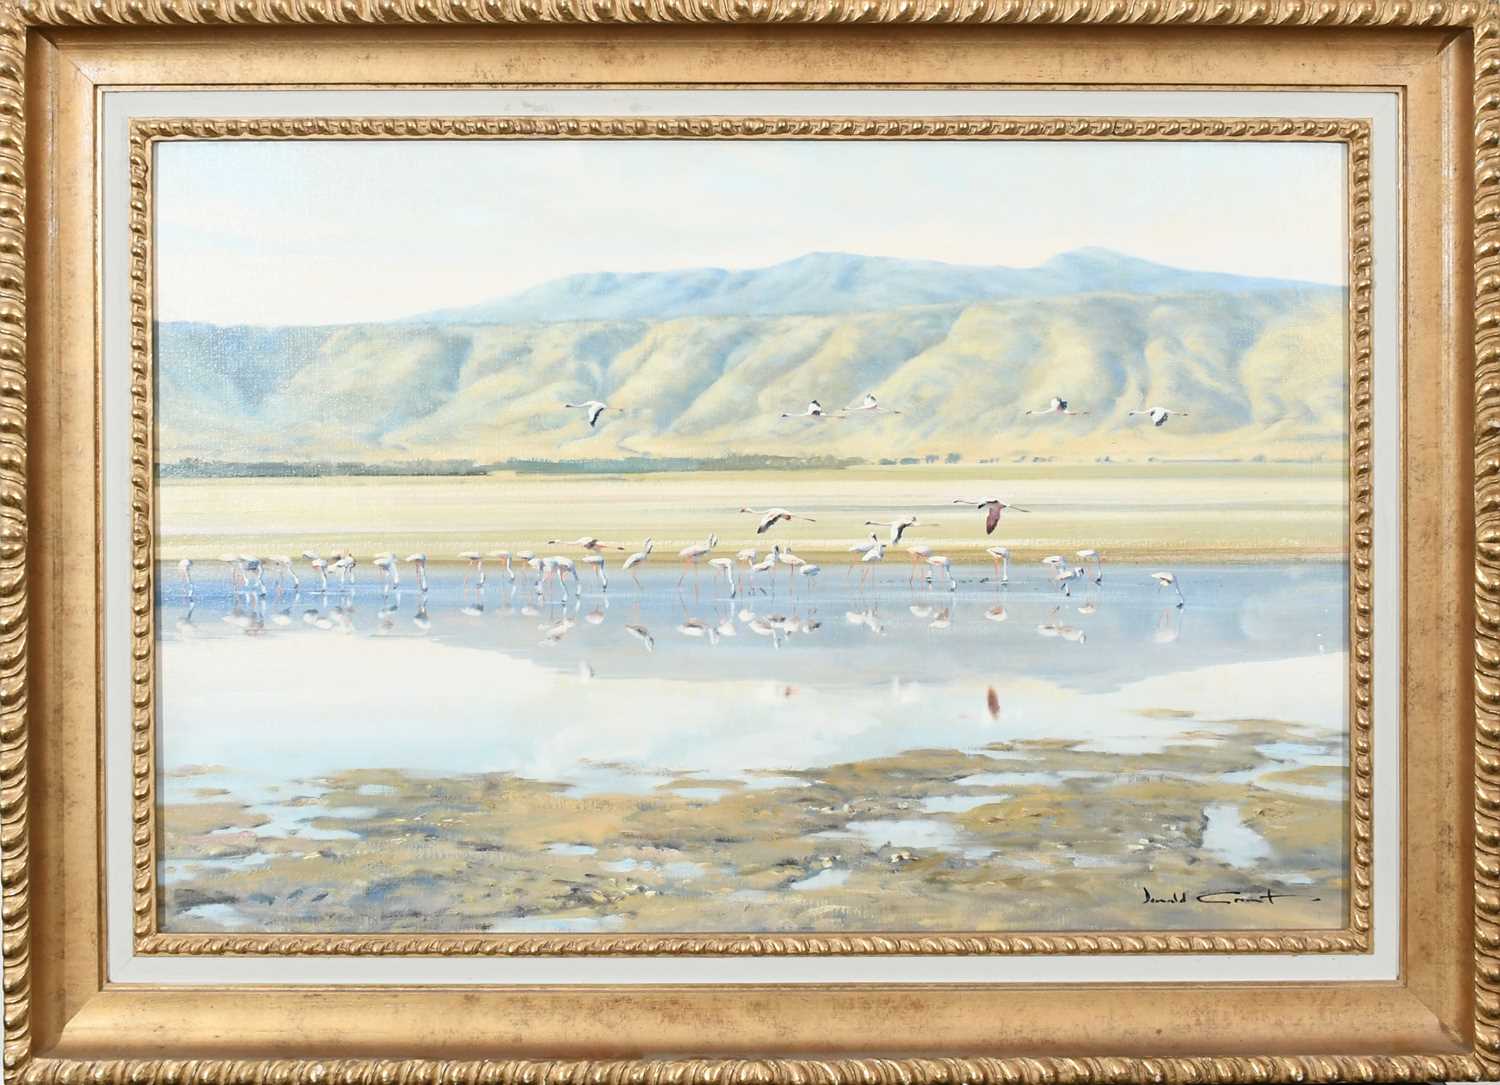 Φ Donald Grant (1924-2001) Flamingos at a watering hole Signed Donald Grant (lower right) Oil on - Image 2 of 4